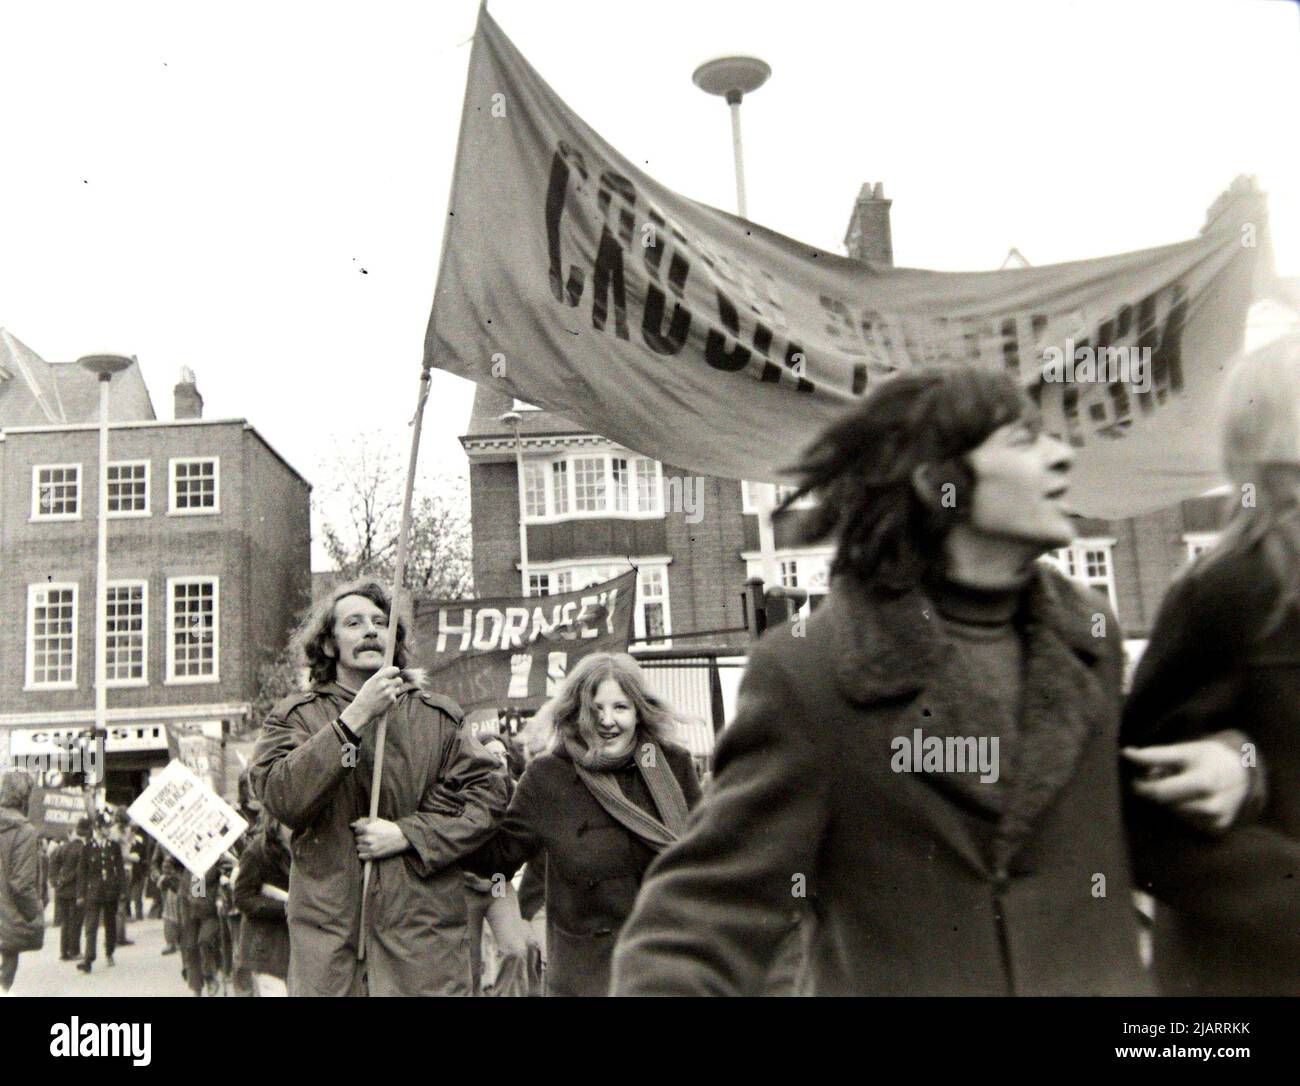 Des manifestants portant des bannières et des pancartes participent à une manifestation contre le racisme à Leicester, Angleterre, Royaume-Uni, îles britanniques, en 1972. Banque D'Images